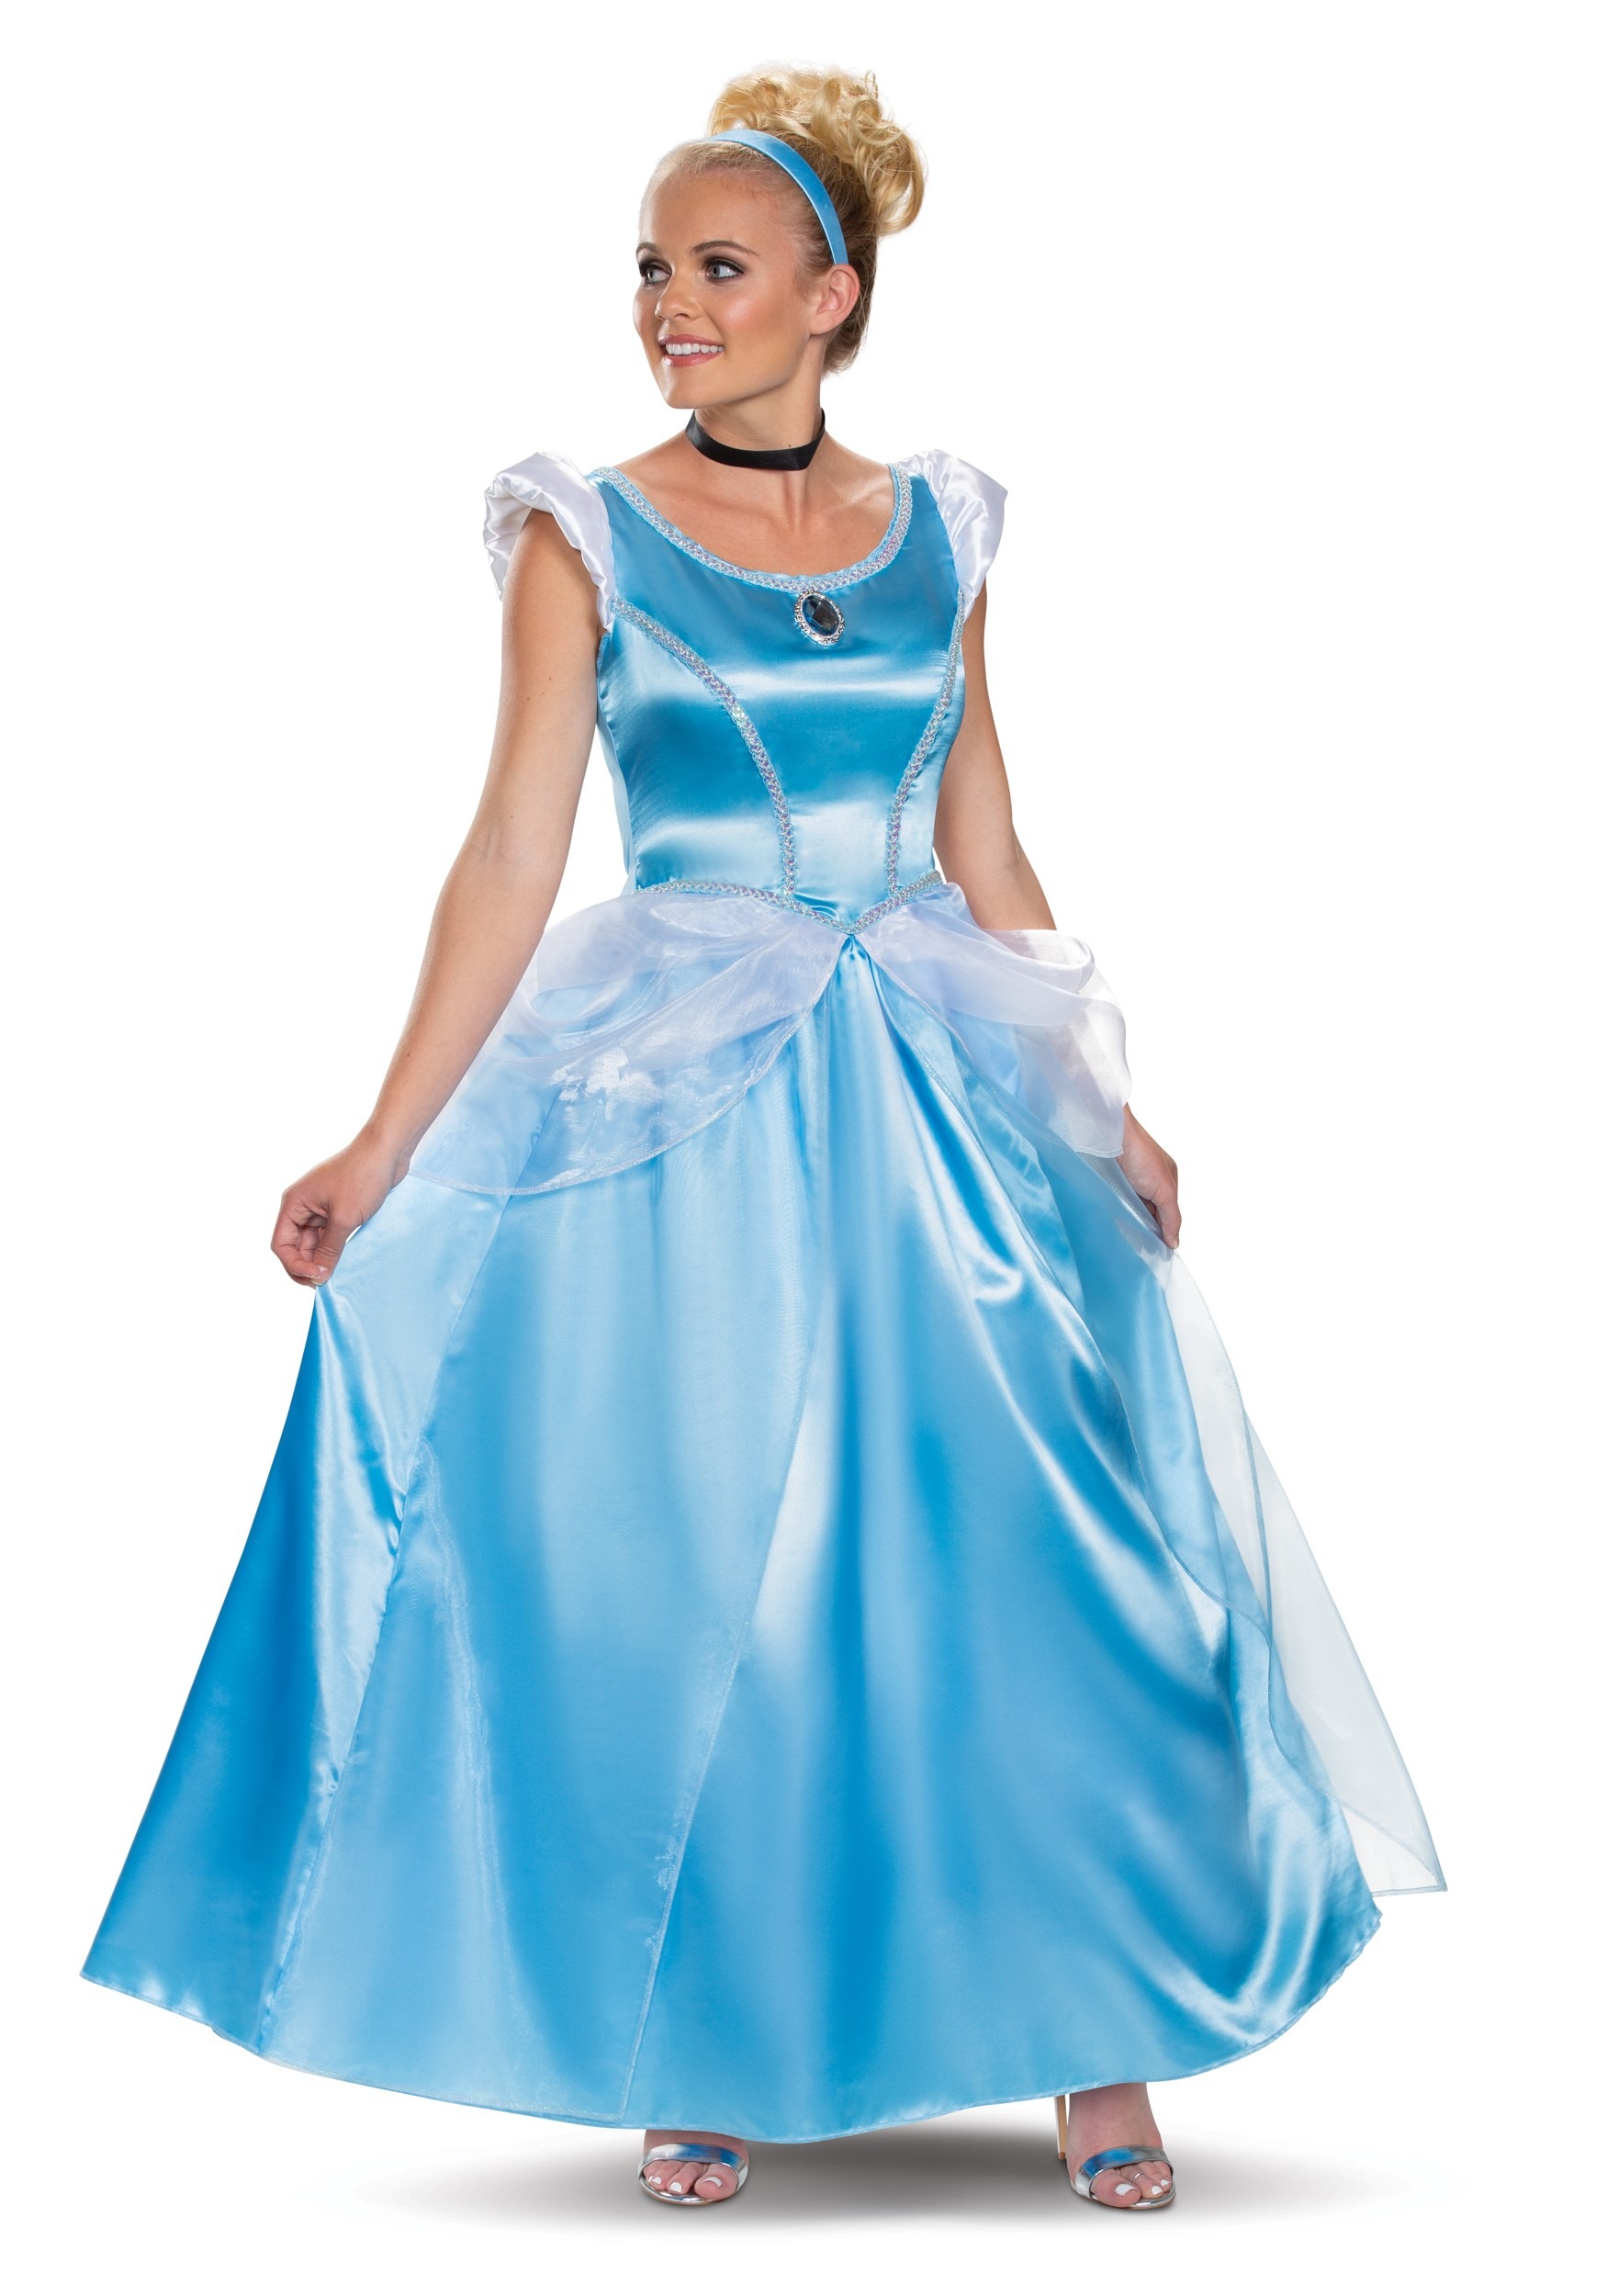 Adult Deluxe Cinderella Fancy Dress Costume